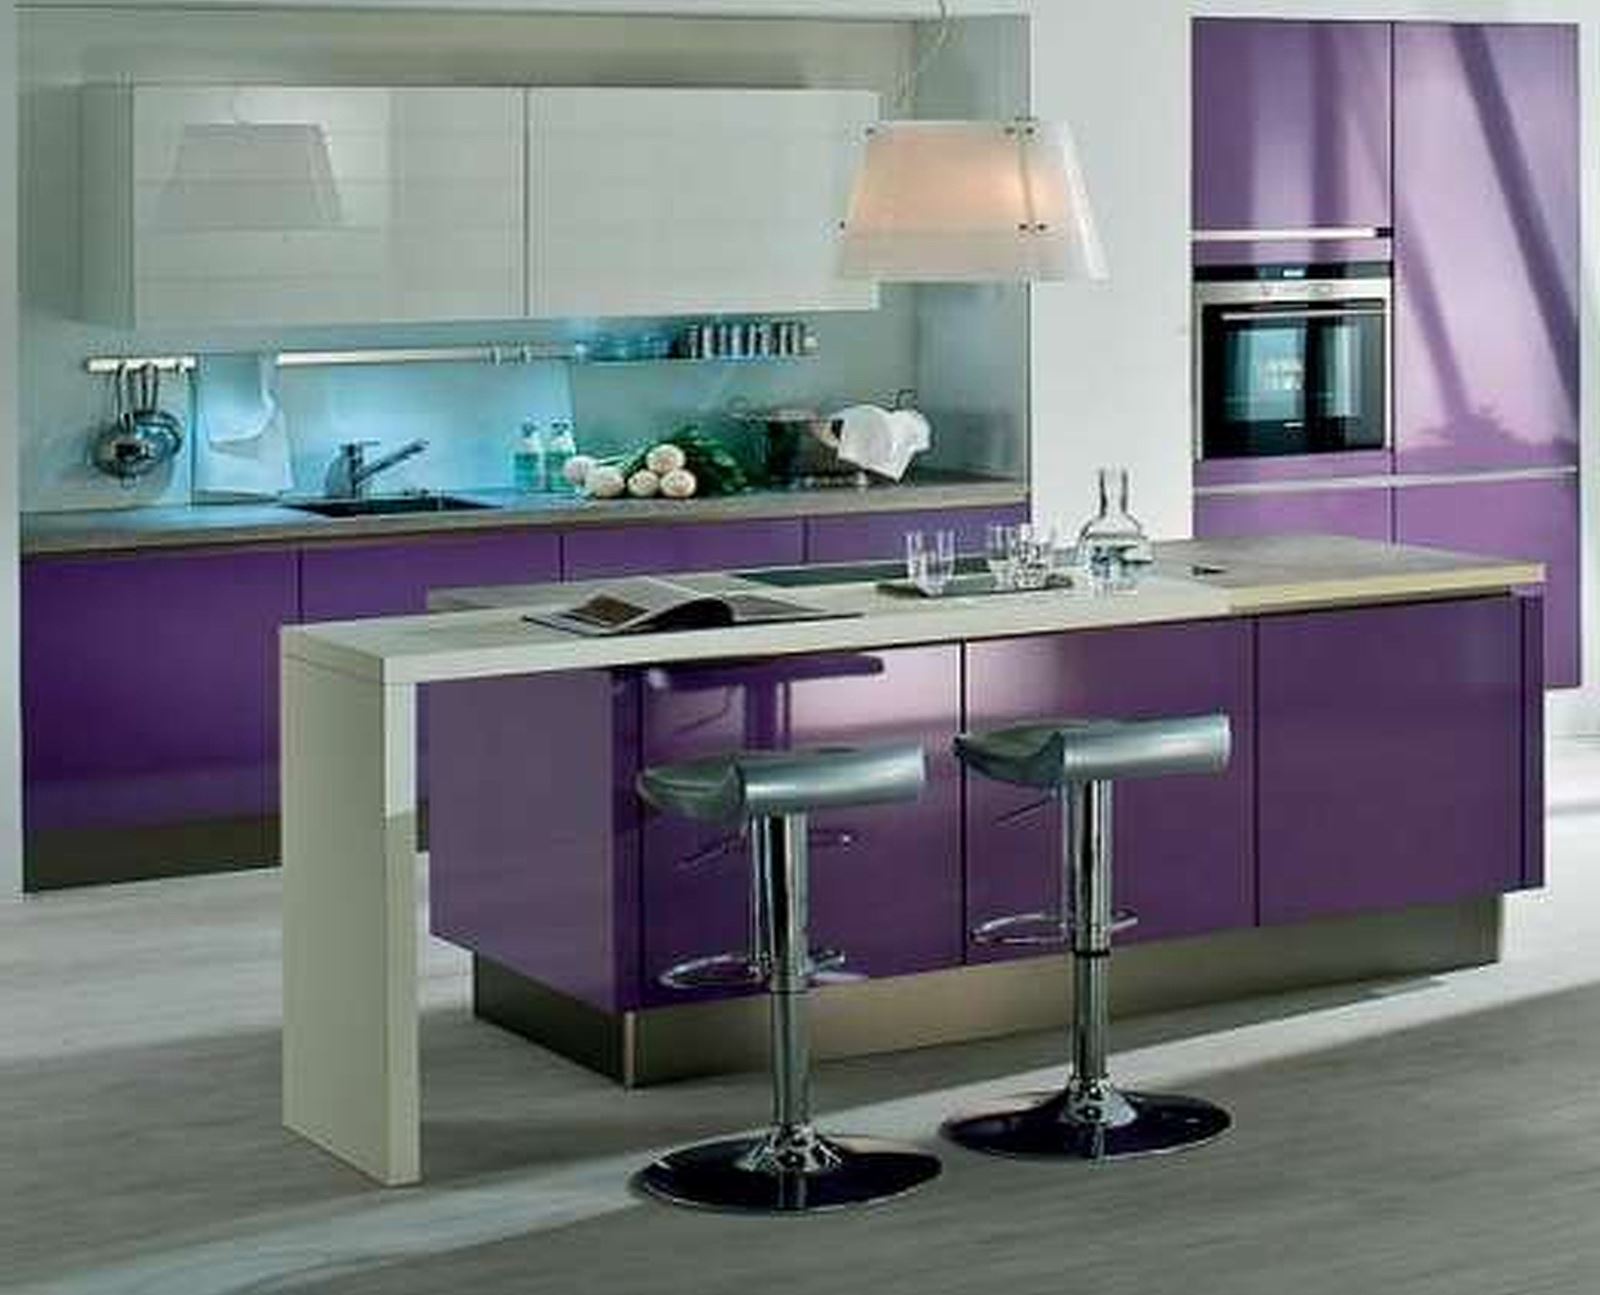 Стойка для кухонного гарнитура. Кухни с барной стойкой. Фиолетовая кухня. Кухня в фиолетовом цвете. Кухонный гарнитур с барной стойкой.